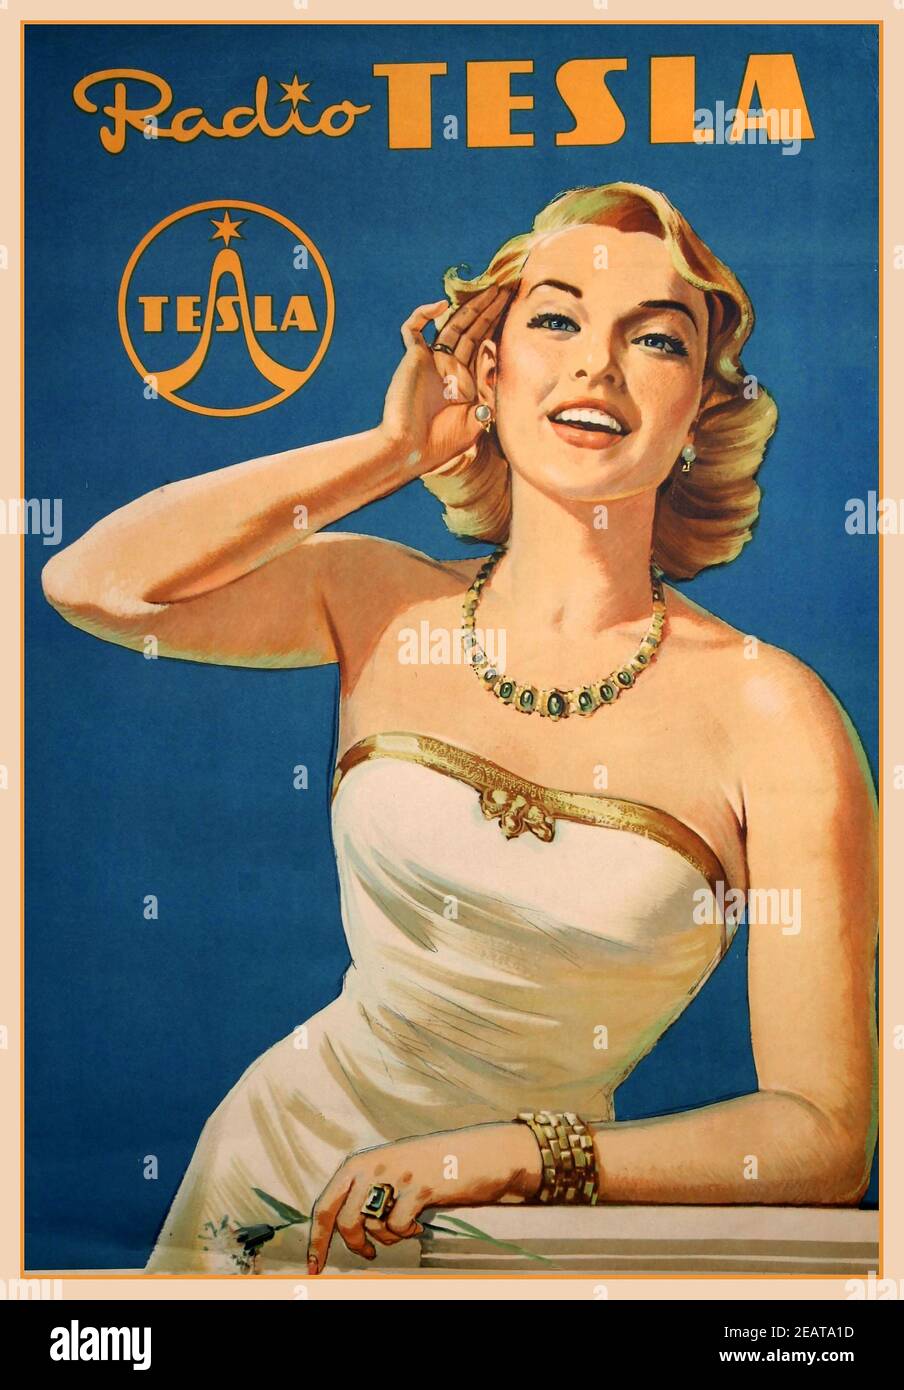 Radio Tesla Vintage Poster 1954 LITHOGRAPHIE WERBEPLAKAT NIKOLA TESLA TSCHECHOSLOWAKEI Nikola Tesla war ein früher Pionier in den Zeiten des Radios. Stockfoto